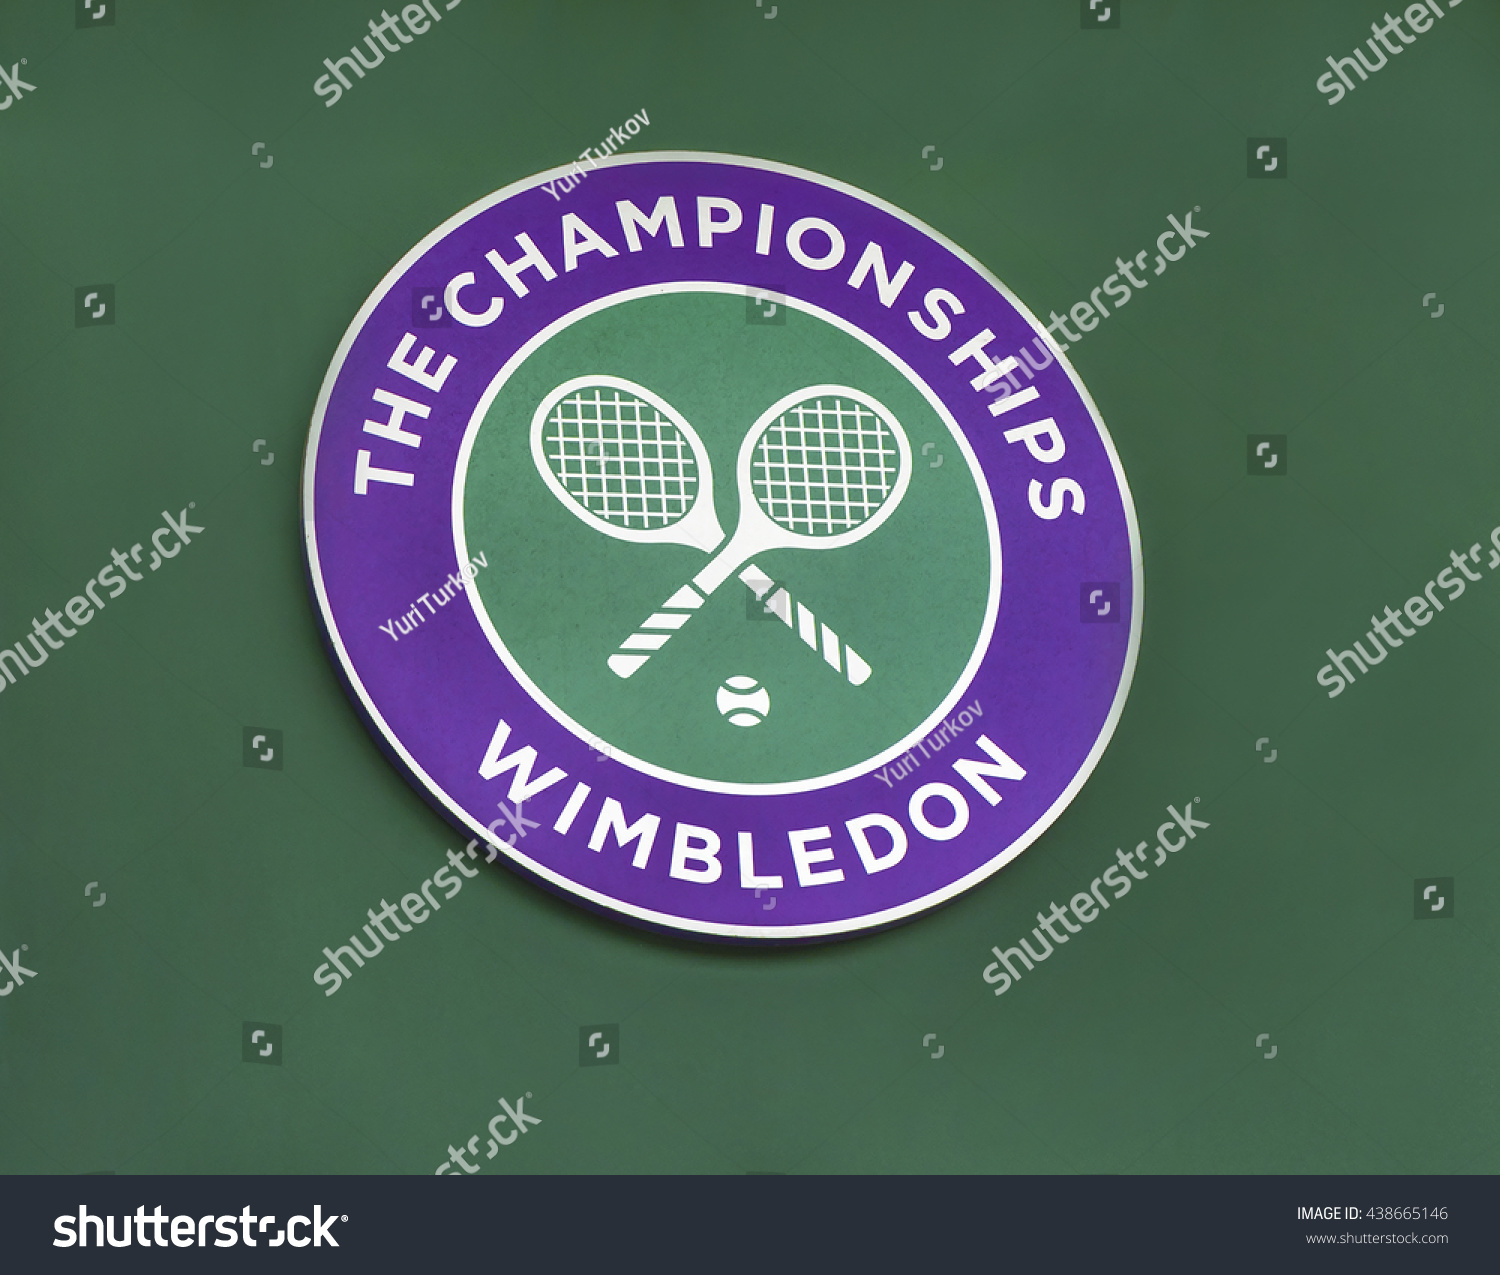 Londonthe Ukcirca May 2016 Emblem Wimbledon Stock Photo 438665146 ...